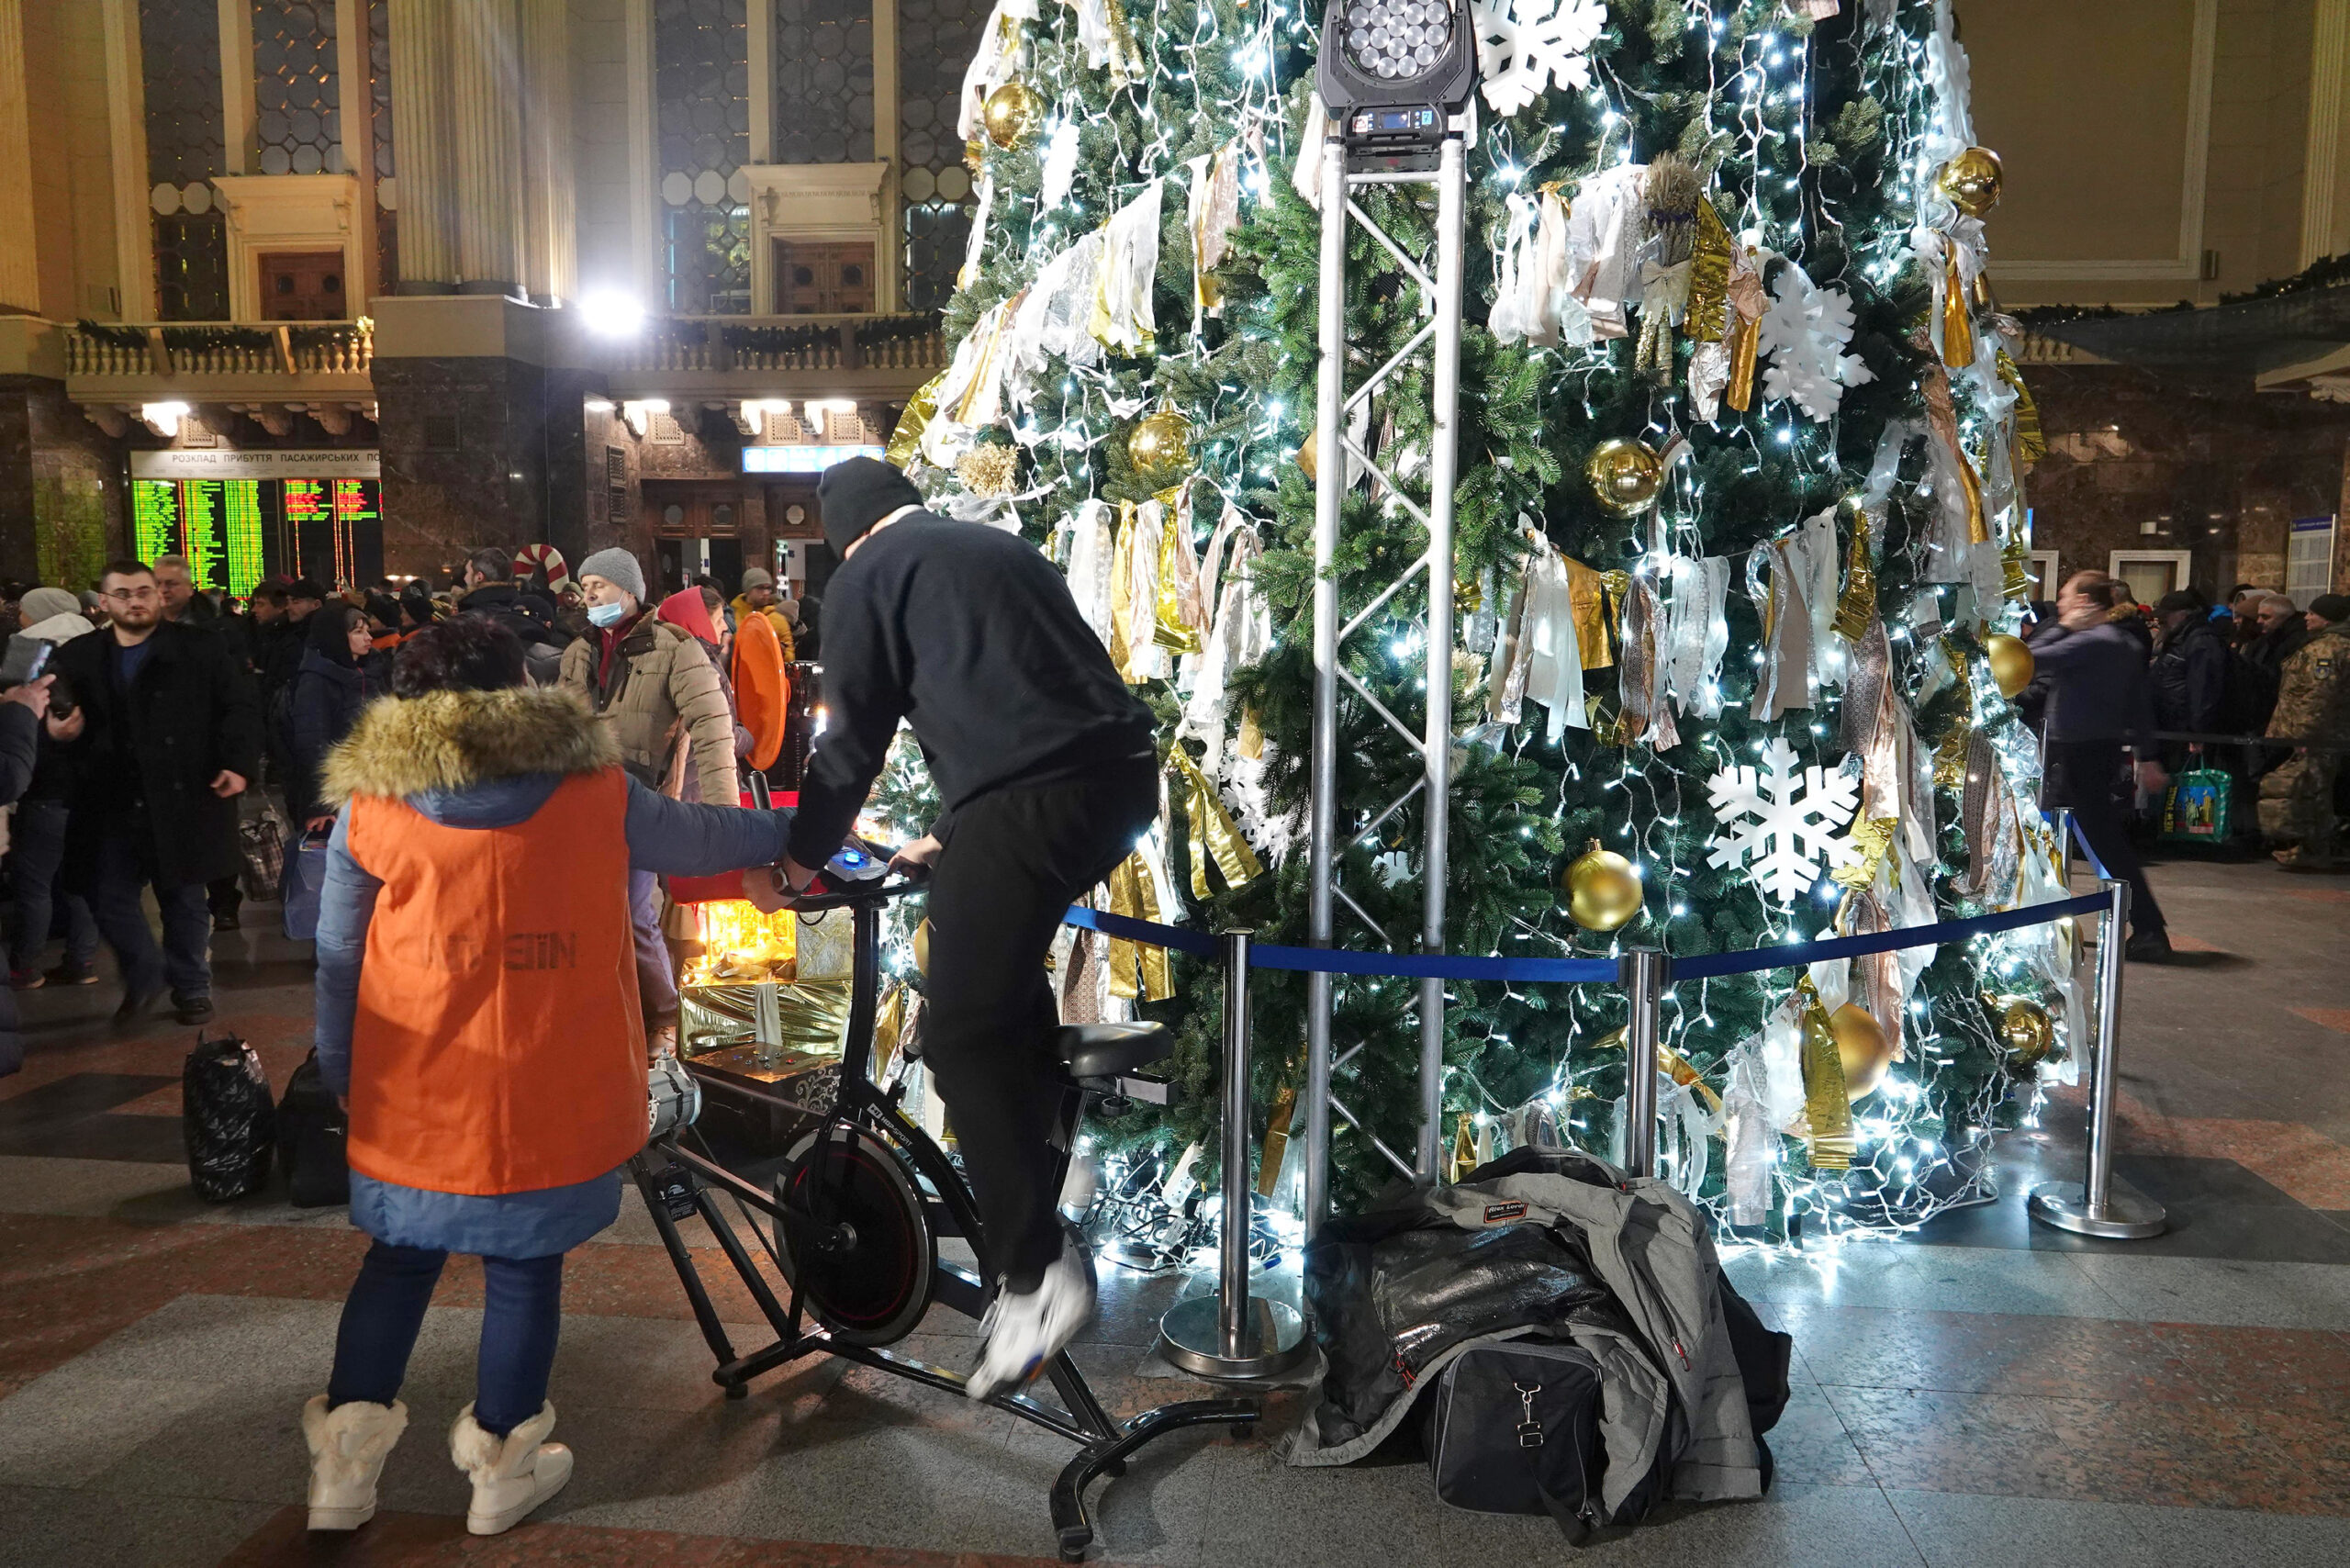 In der Empfangshalle auf dem Hauptbahnhof tritt ein Mann auf einem Energie-Fahrrad in die Pedalen, um den geschmückten Baum zum Leuchten zu bringen.